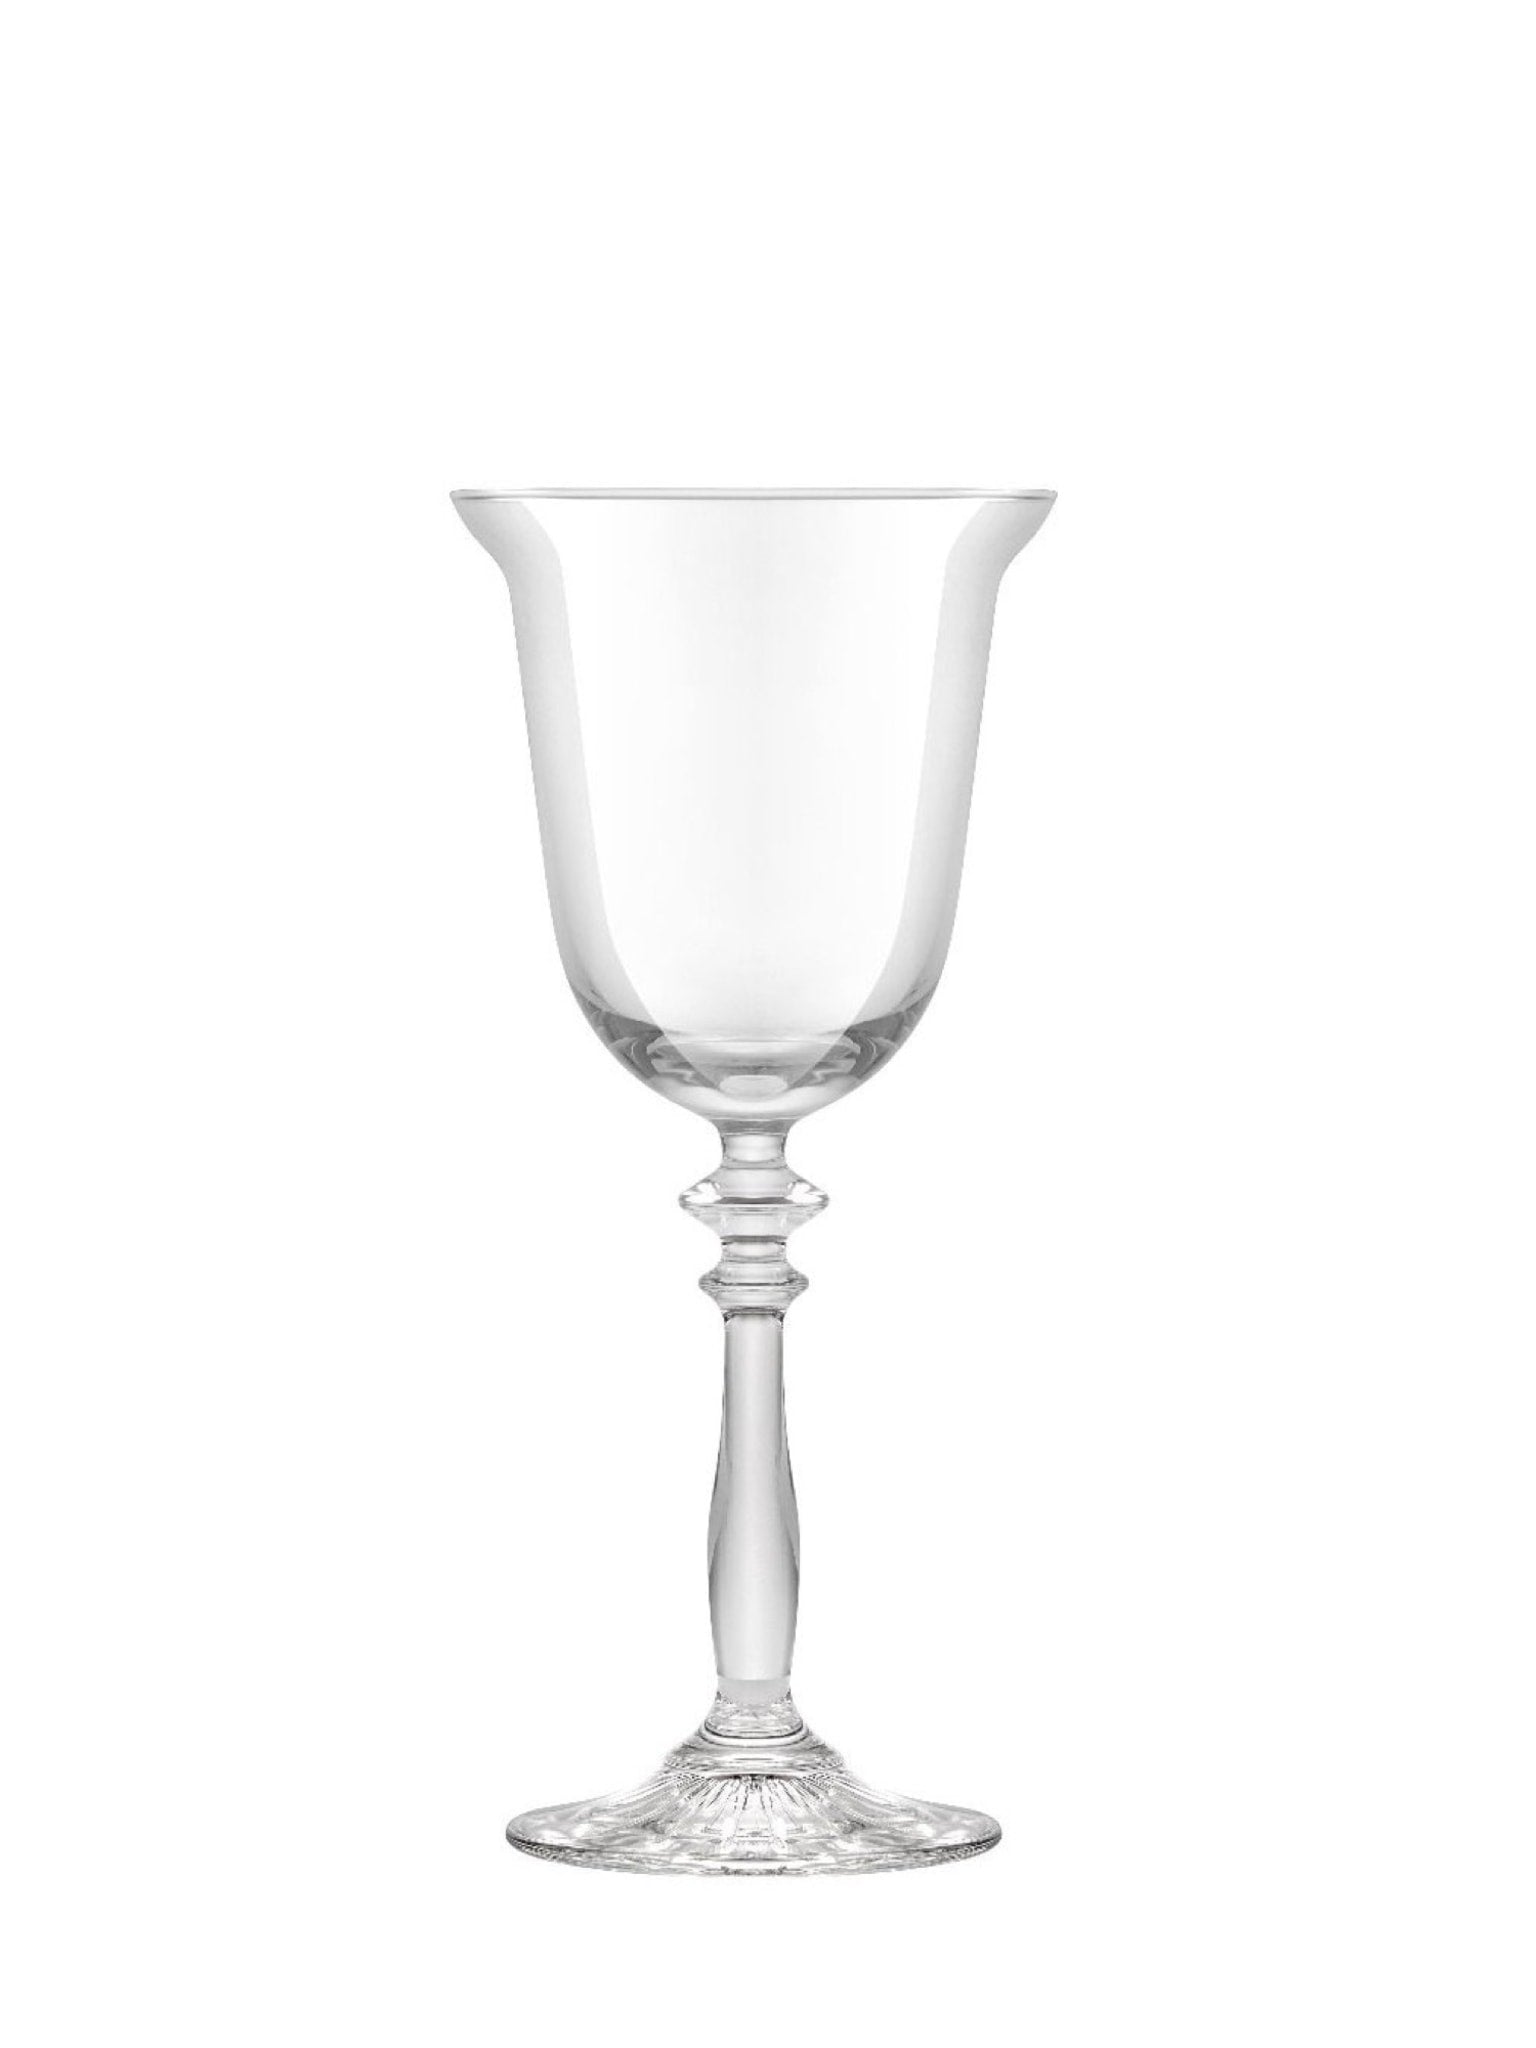 Smukt 1924 vinglas til servering af elegante vine eller cocktails.